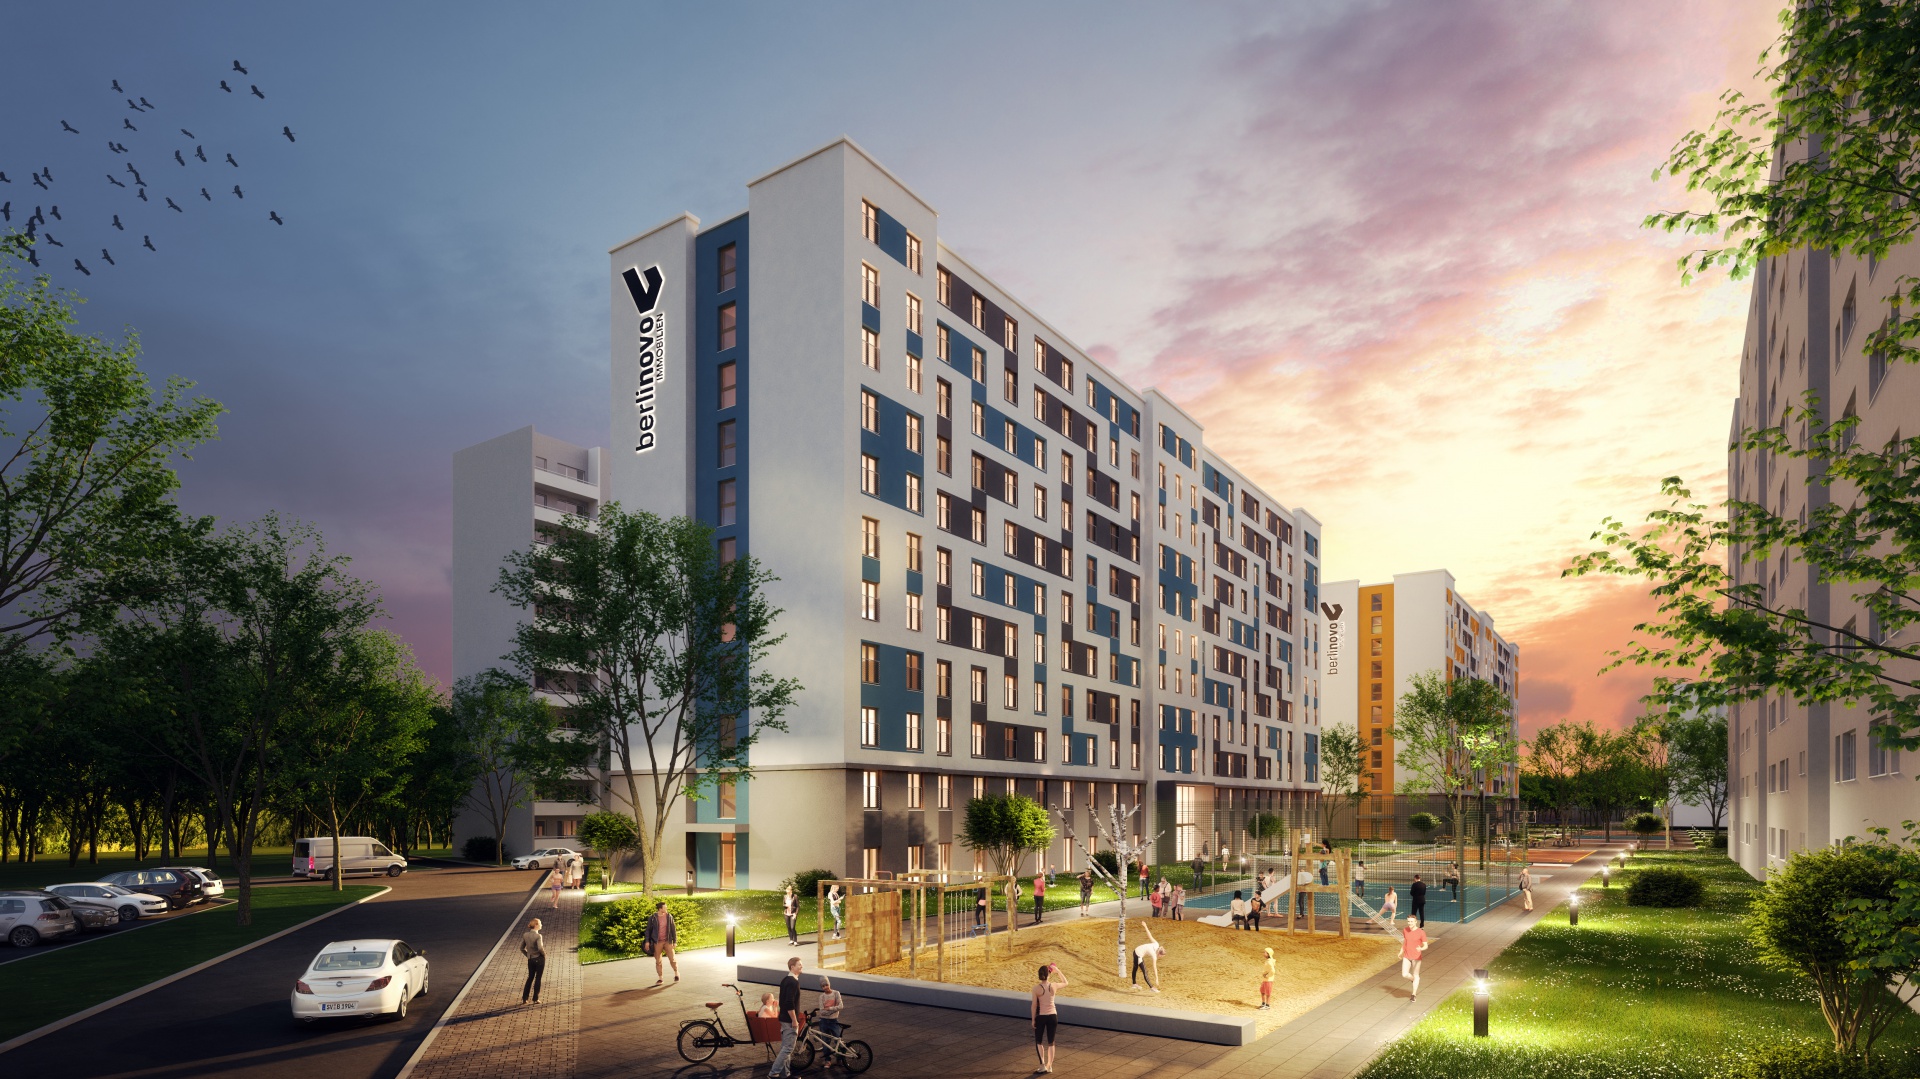 0-Projekt: Zwei Wohnhochhäuser mit insg. 808 Appartements in modularer Bauweise